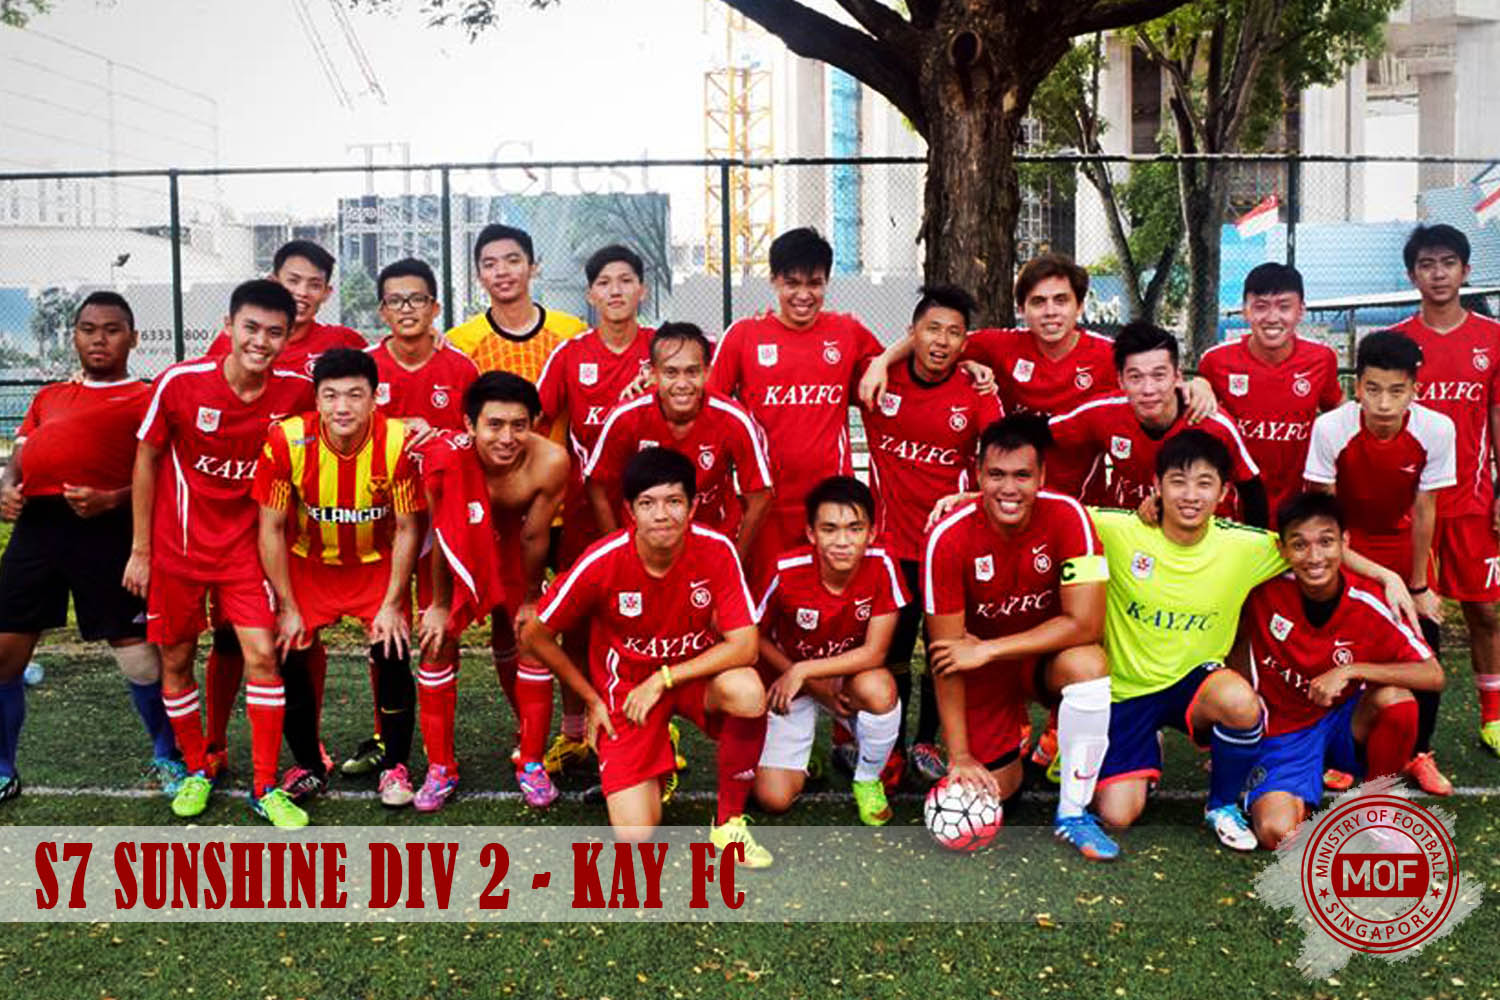 Kay FC